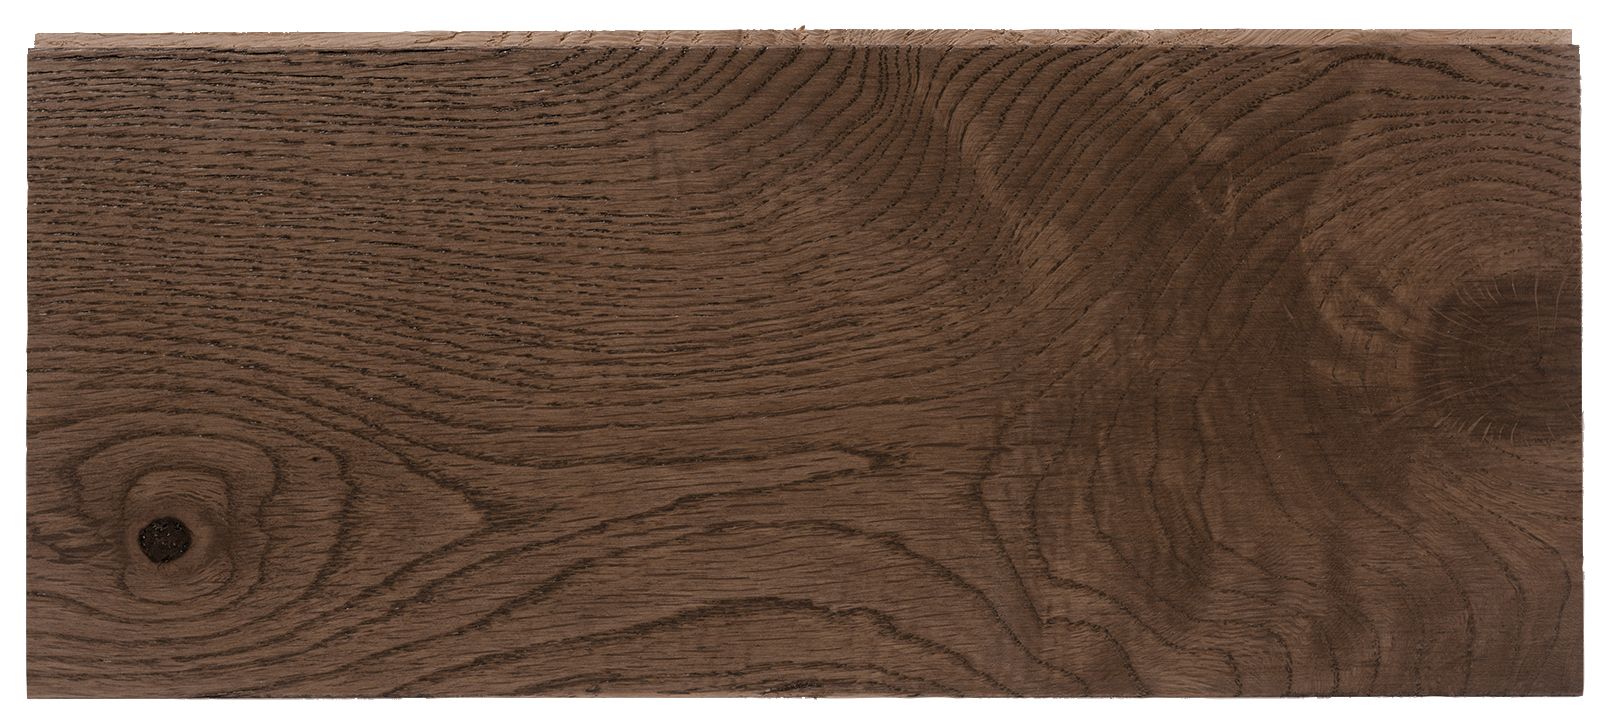 W by Woodpecker Dark Oak 18mm Solid Wood Flooring - Sample